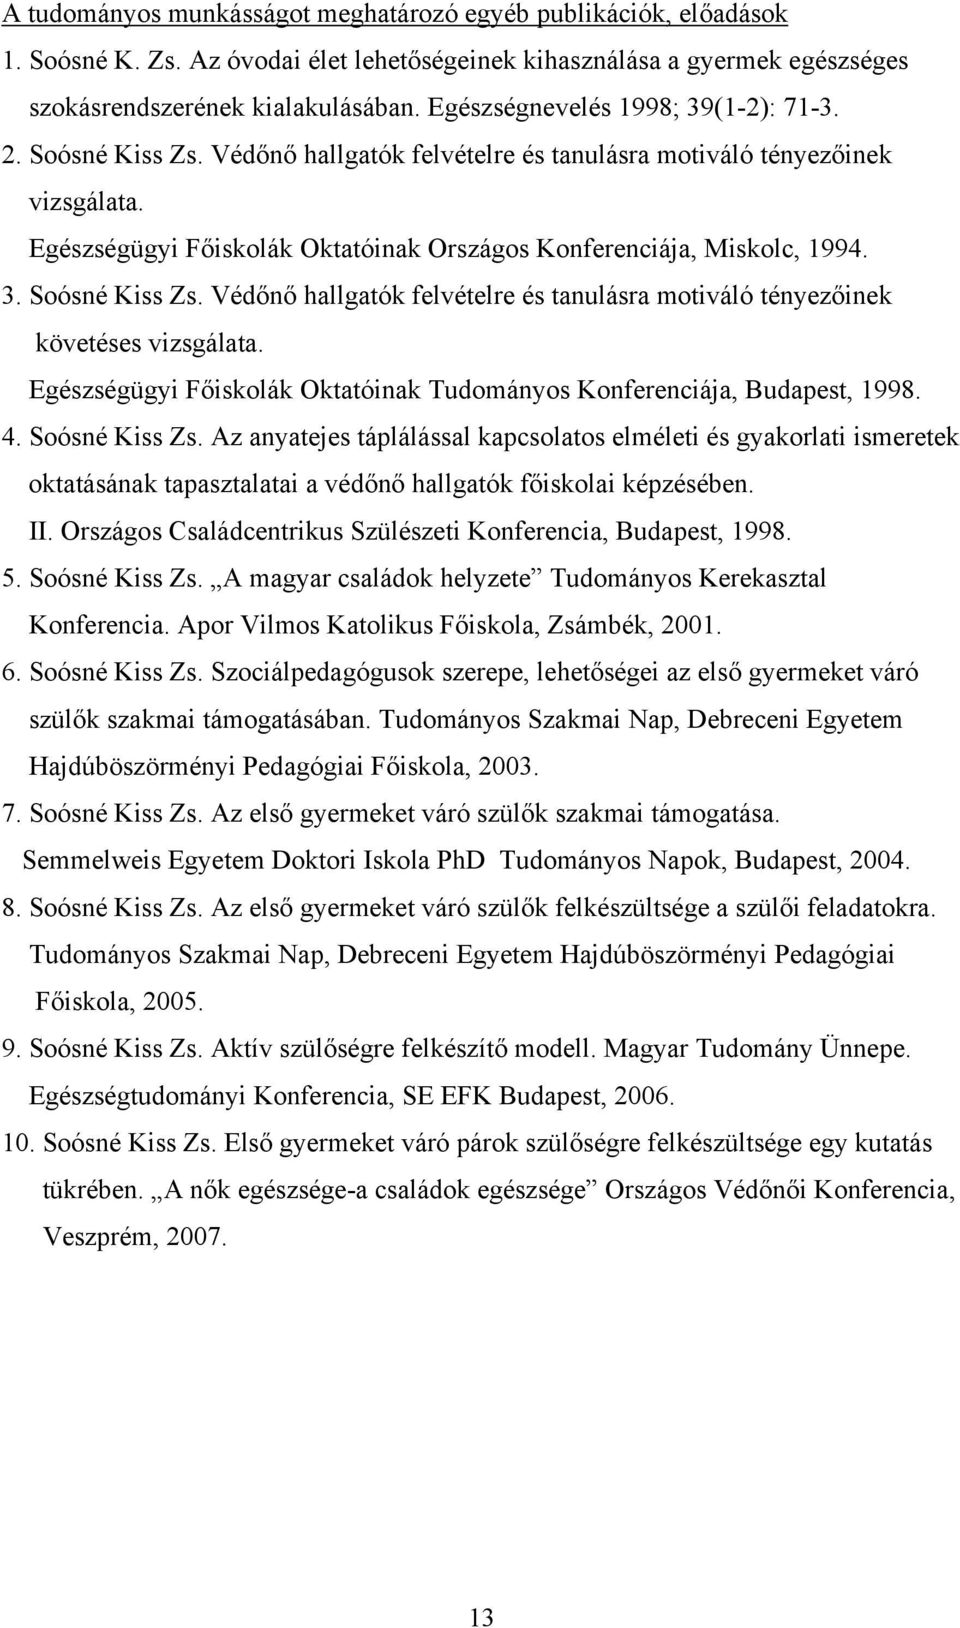 Egészségügyi Főiskolák Oktatóinak Országos Konferenciája, Miskolc, 1994. 3. Soósné Kiss Zs. Védőnő hallgatók felvételre és tanulásra motiváló tényezőinek követéses vizsgálata.